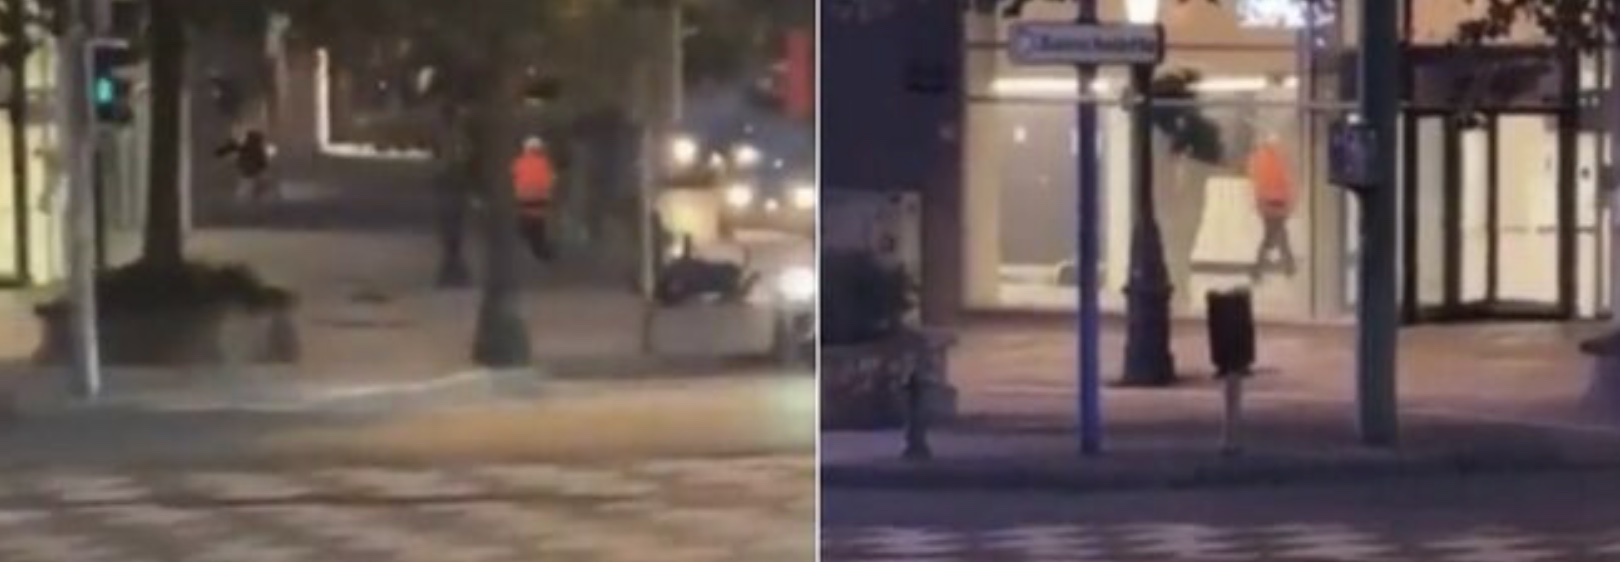 Пуцњава у Бриселу, двоје мртвих и један повређен: Пратимо терористички траг